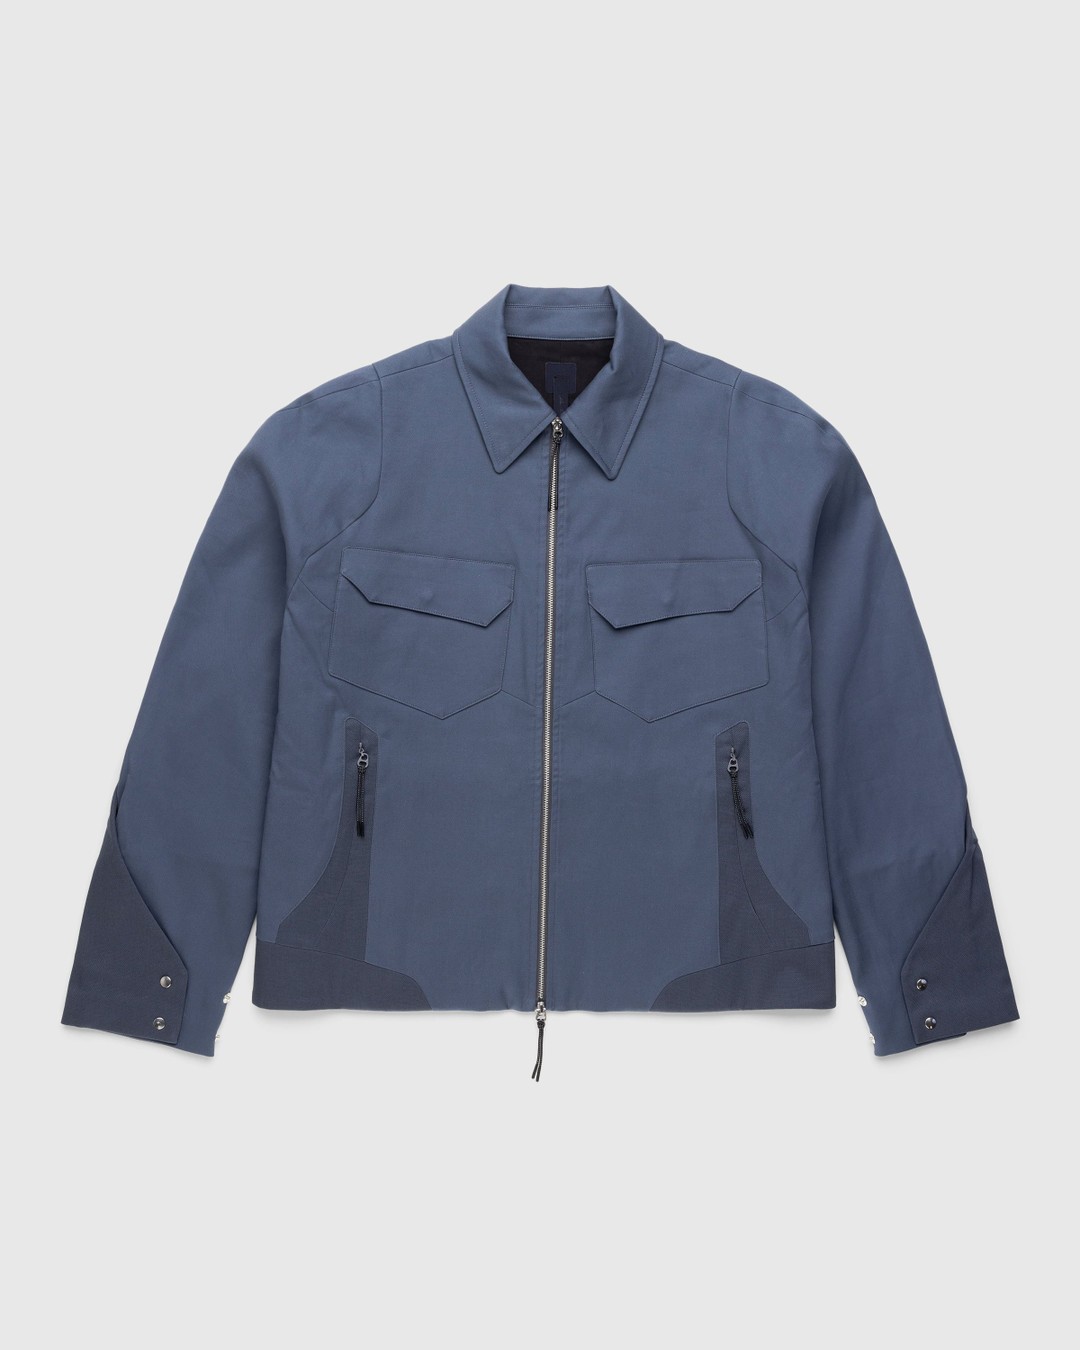 _J.L-A.L_ – Delwa Jacket Blue - Outerwear - Blue - Image 1